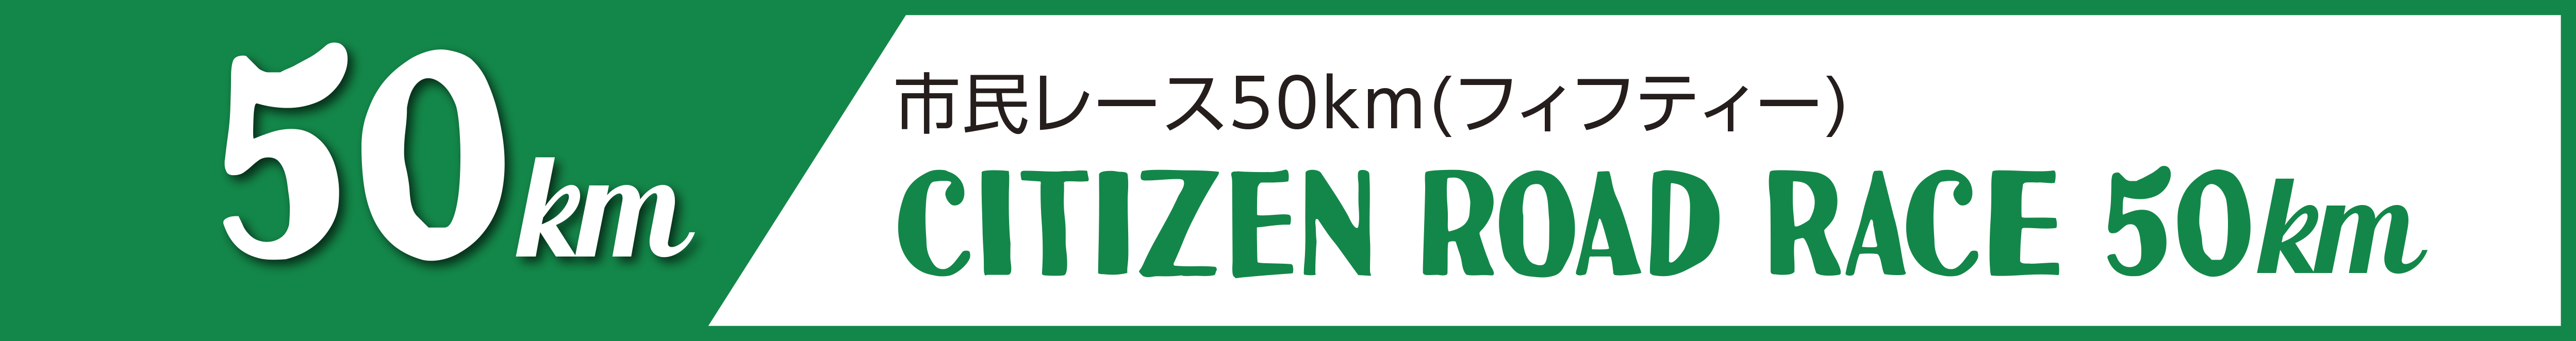 市民レース50km(フィフティー)